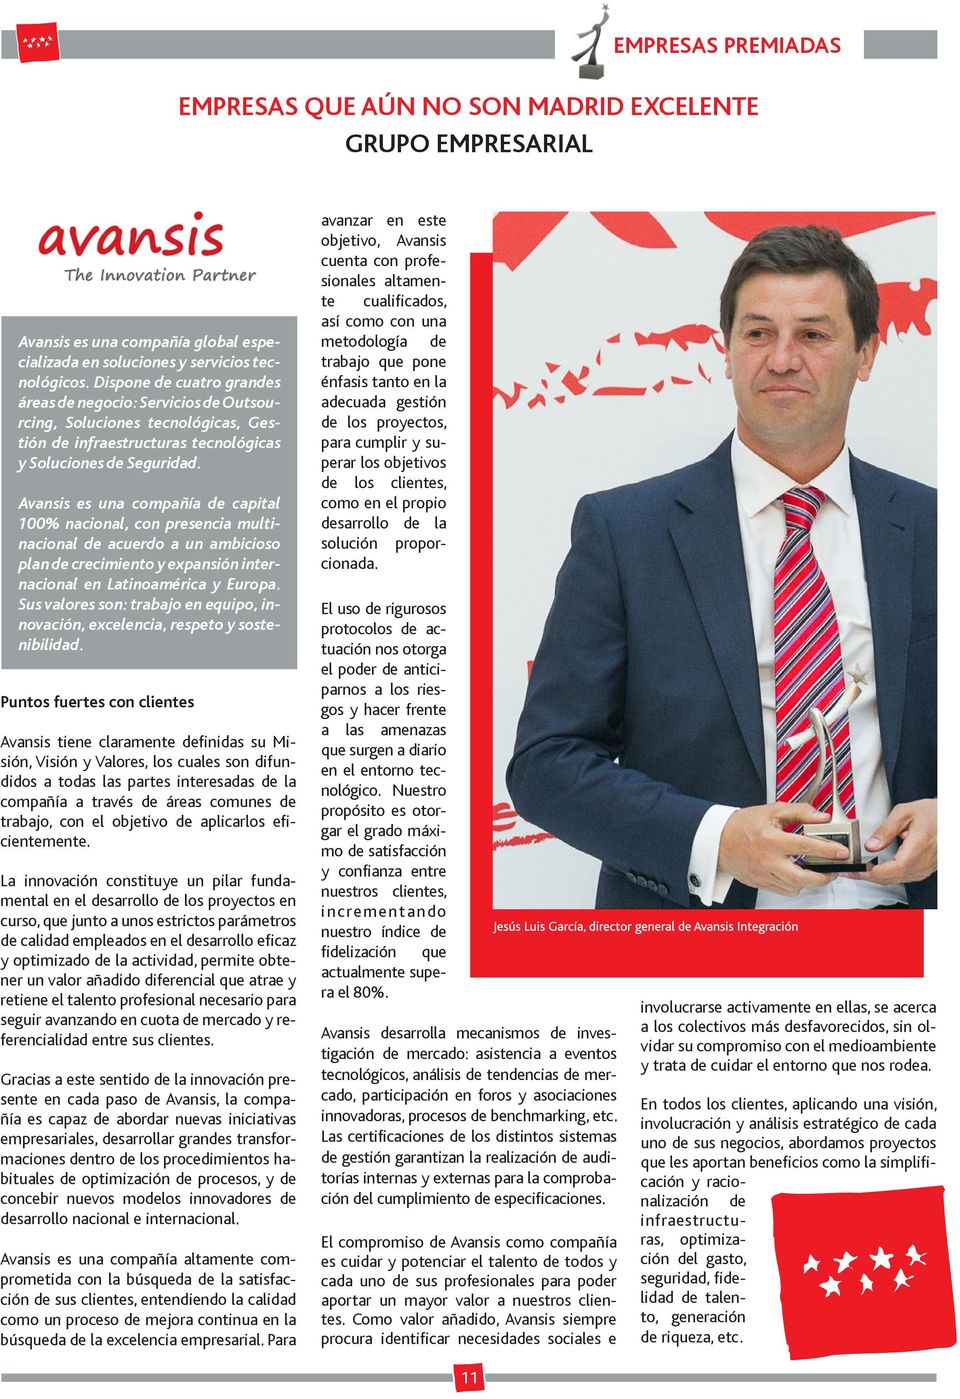 Avansis es una compañía de capital 100% nacional, con presencia multinacional de acuerdo a un ambicioso plan de crecimiento y expansión internacional en Latinoamérica y Europa.